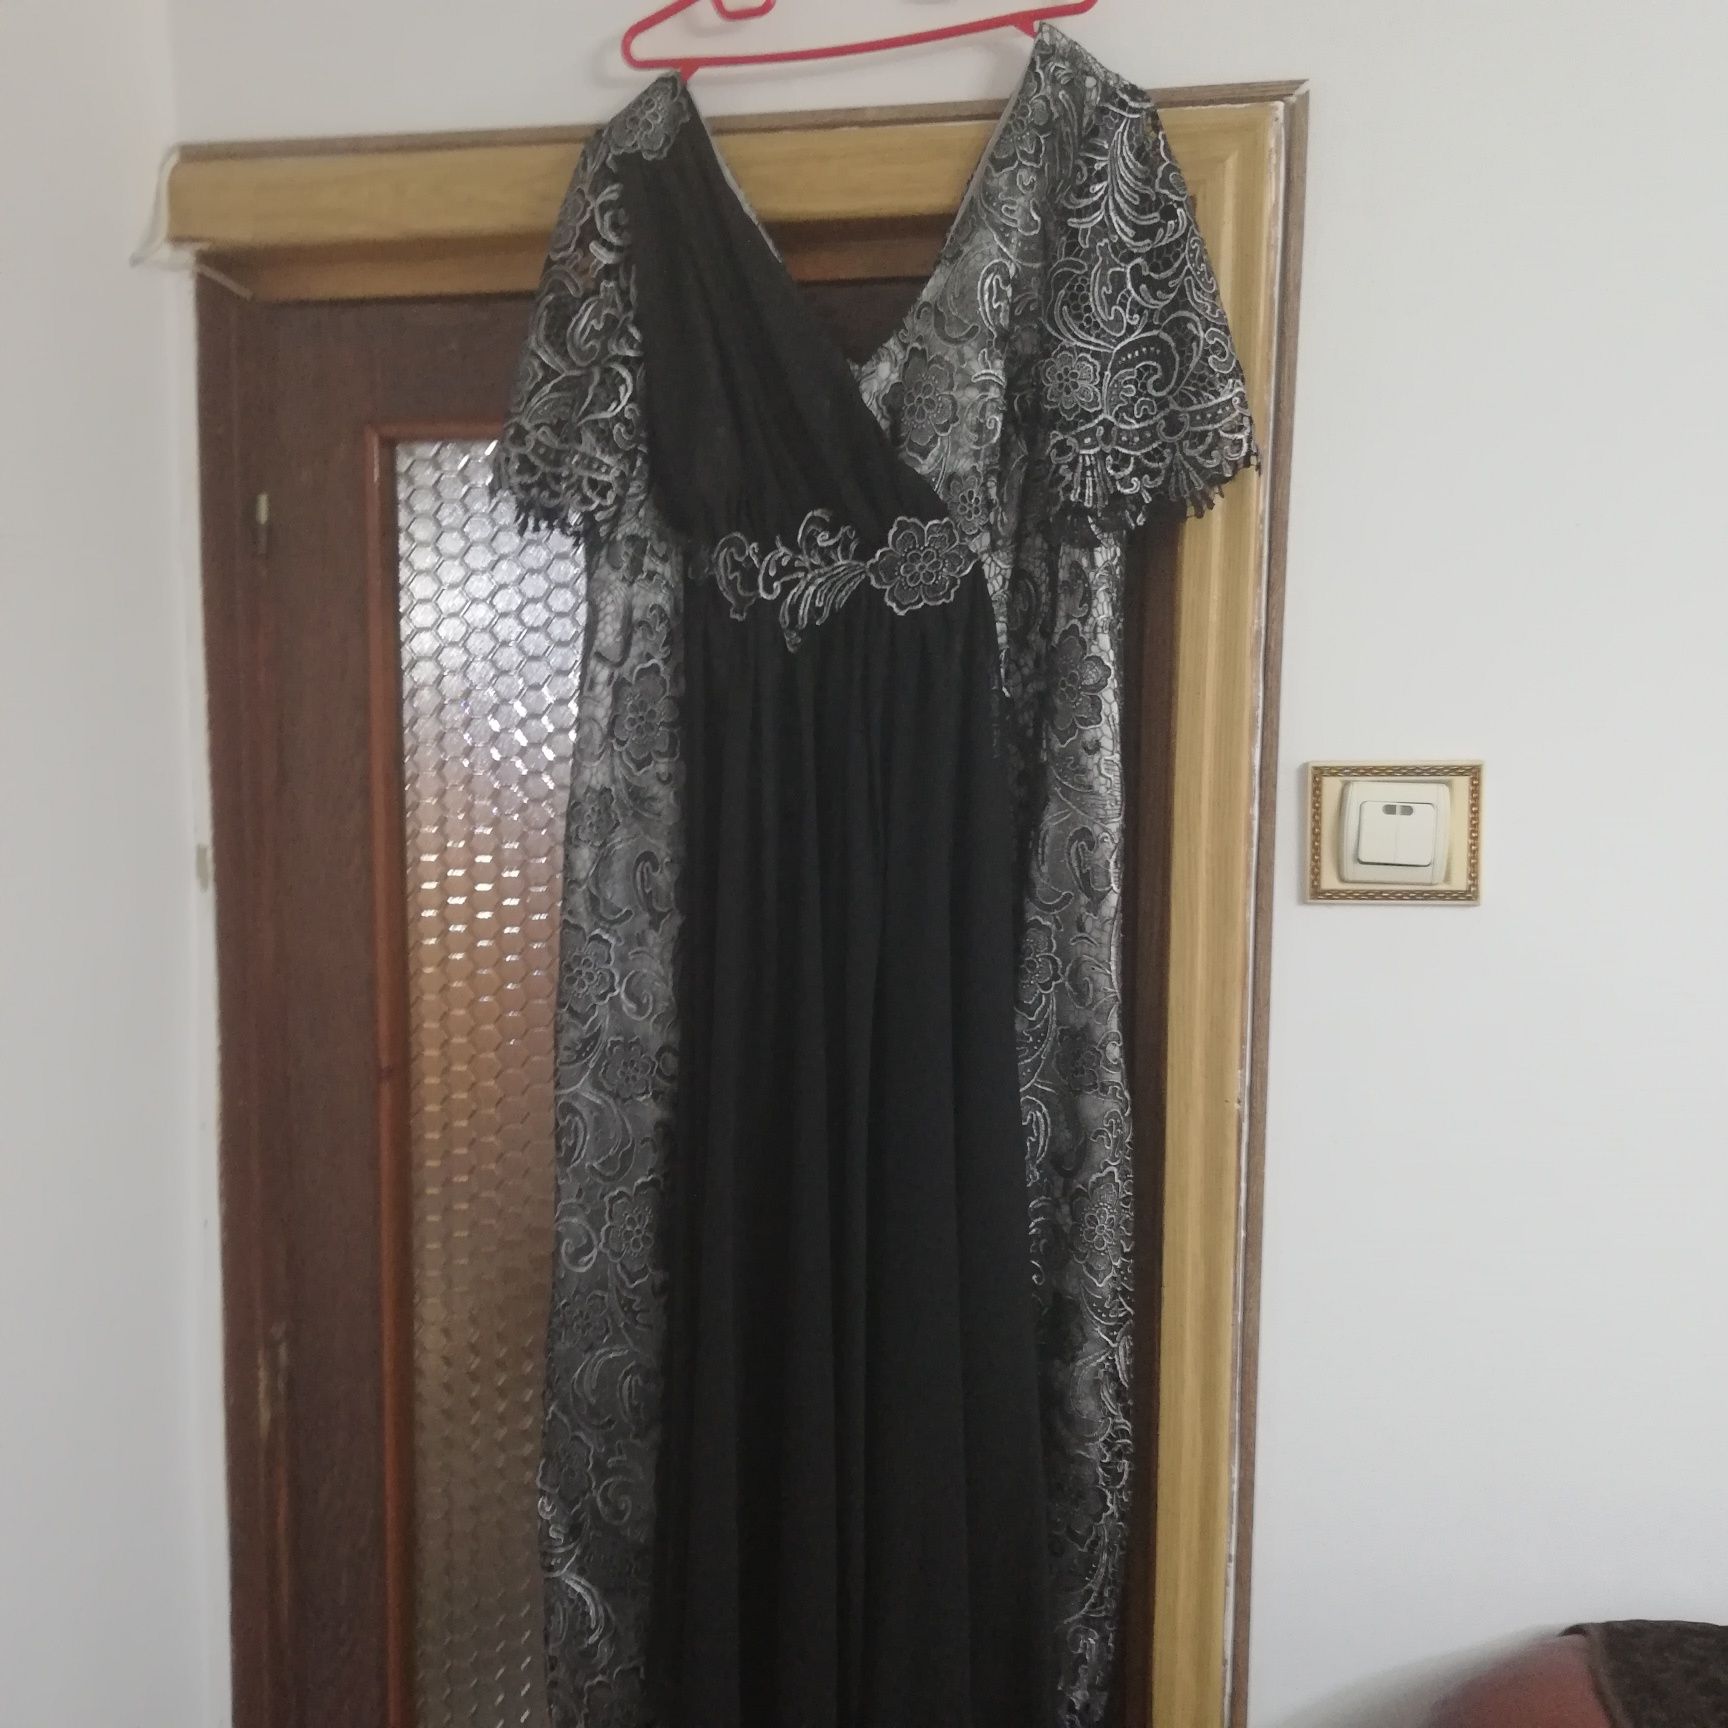 Doua rochii mireasa mărimea 46 -48 și doua rochii soacra mărimea 54-56